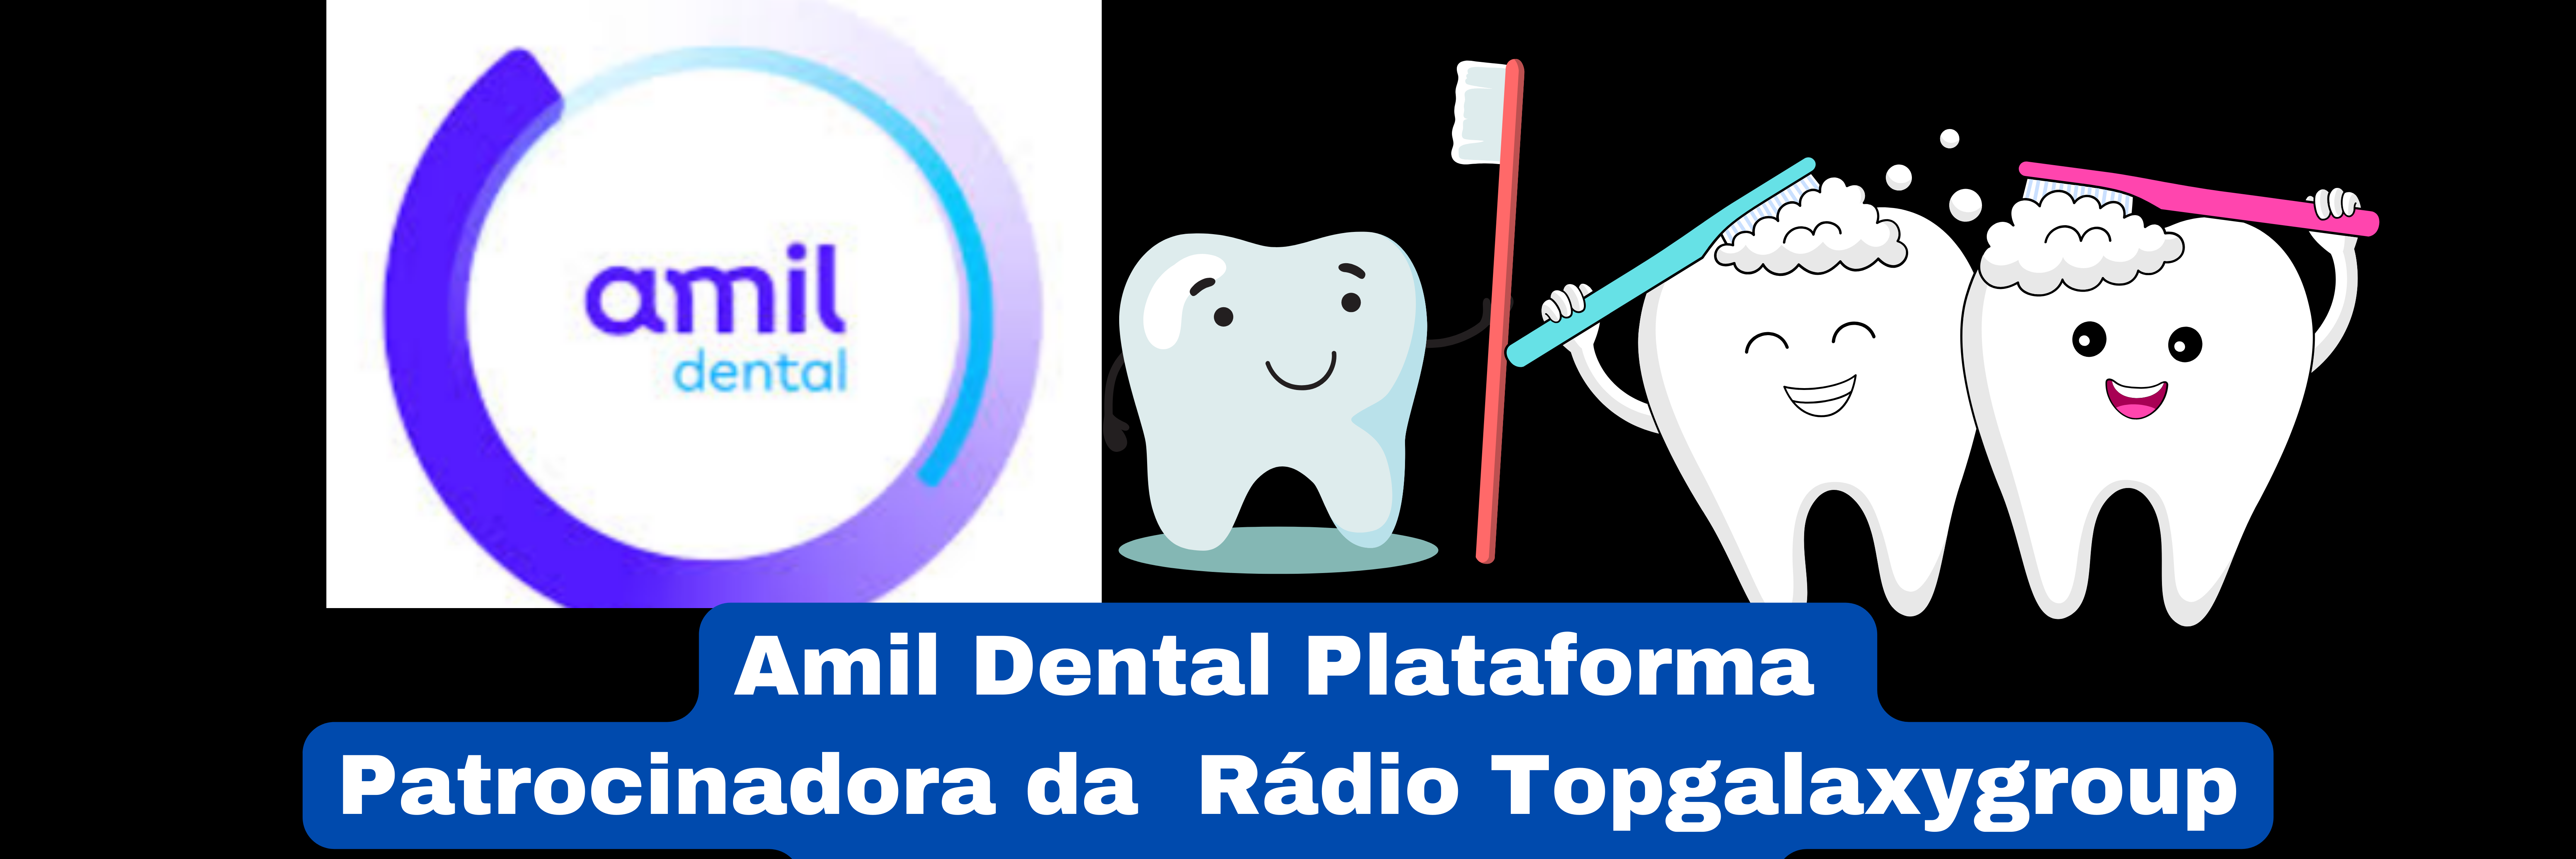 Rádio Topgalaxygroup Patrocínio Amil Dental